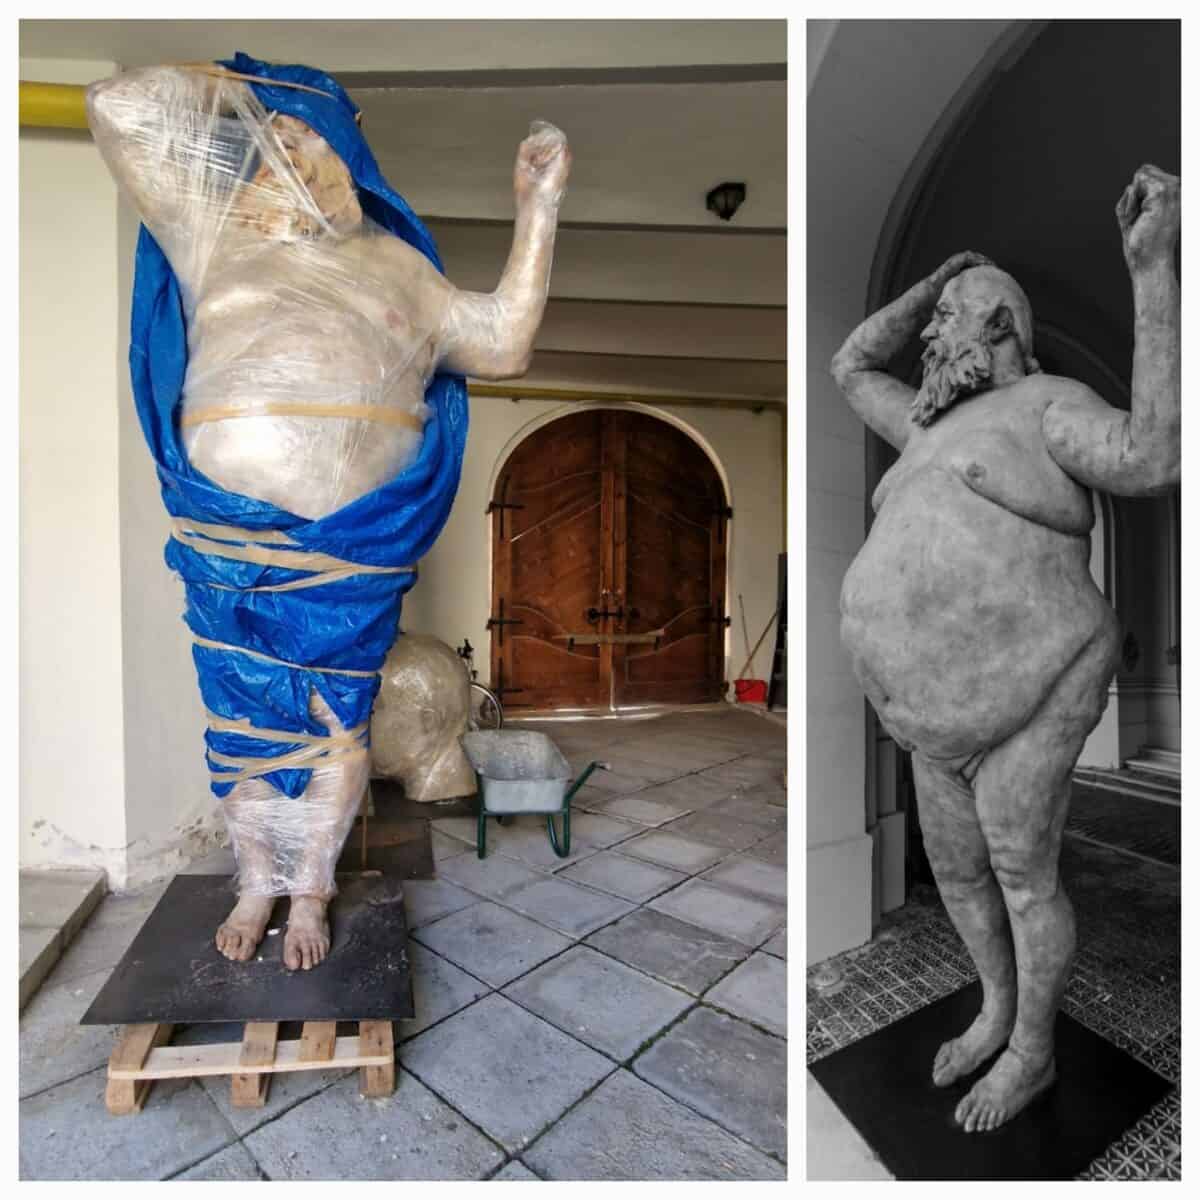 exclusiv una dintre cele mai mari sculpturi văzute vreodată în sibiu va fi expusă la brukenthal în septembrie(foto, video)